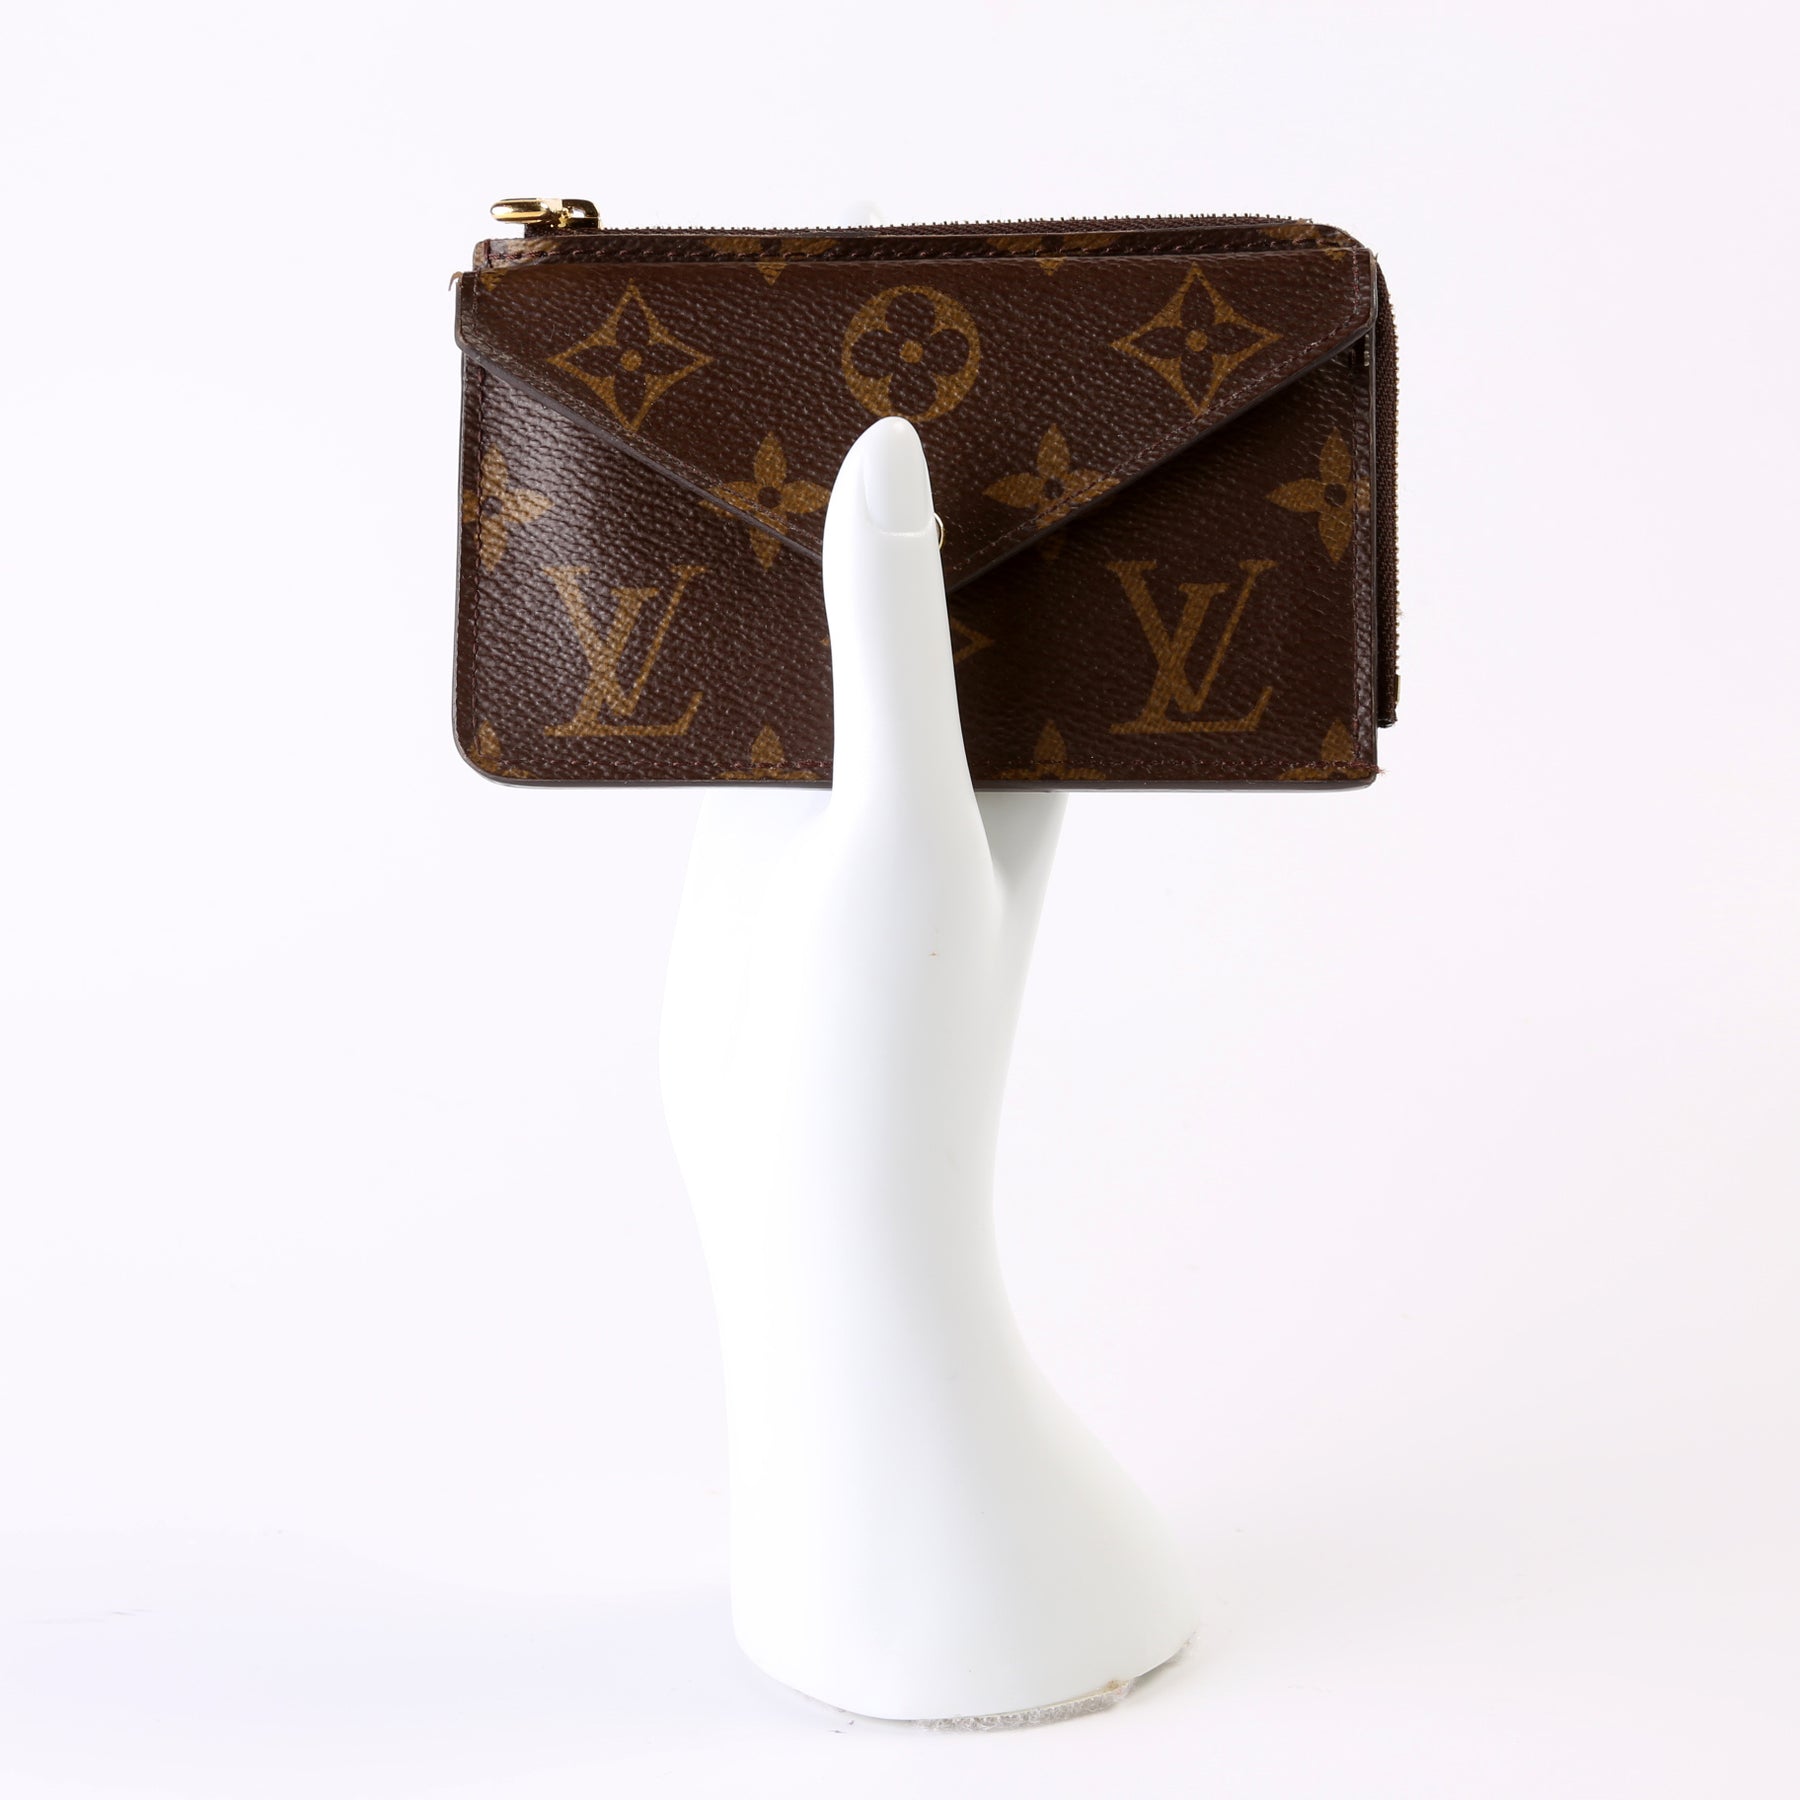 Louis Vuitton MONOGRAM Card holder recto verso (M69431)